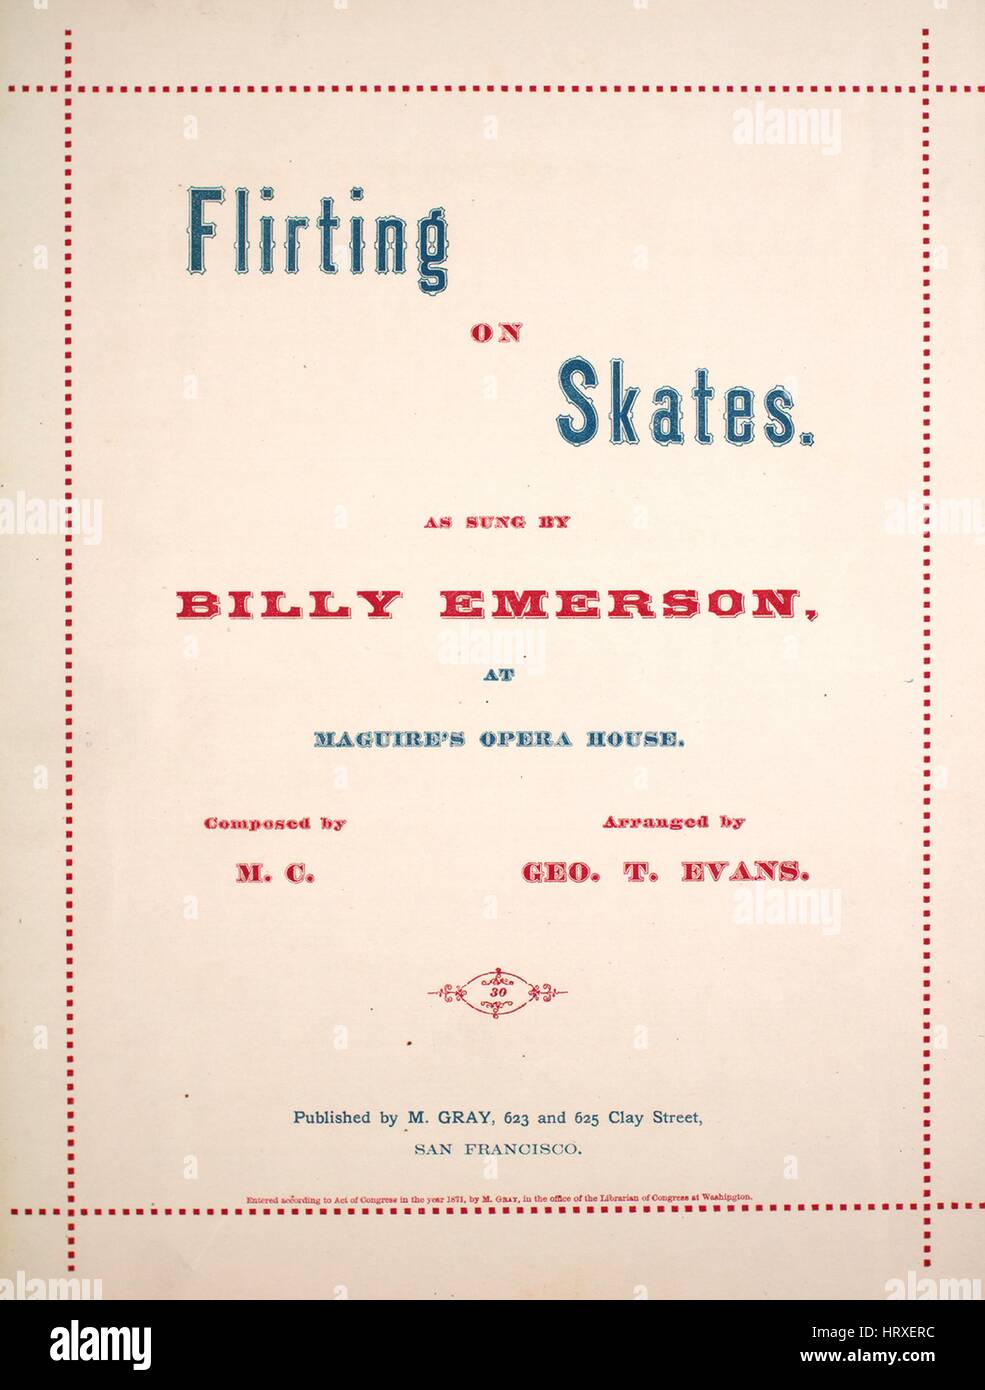 Imagen de cubierta de partituras de la canción "coqueteo sobre patines",  con notas de autoría original leyendo 'formada por Mc organizado por Geo T  Evans palabras por HPT', Estados Unidos, 1871. El